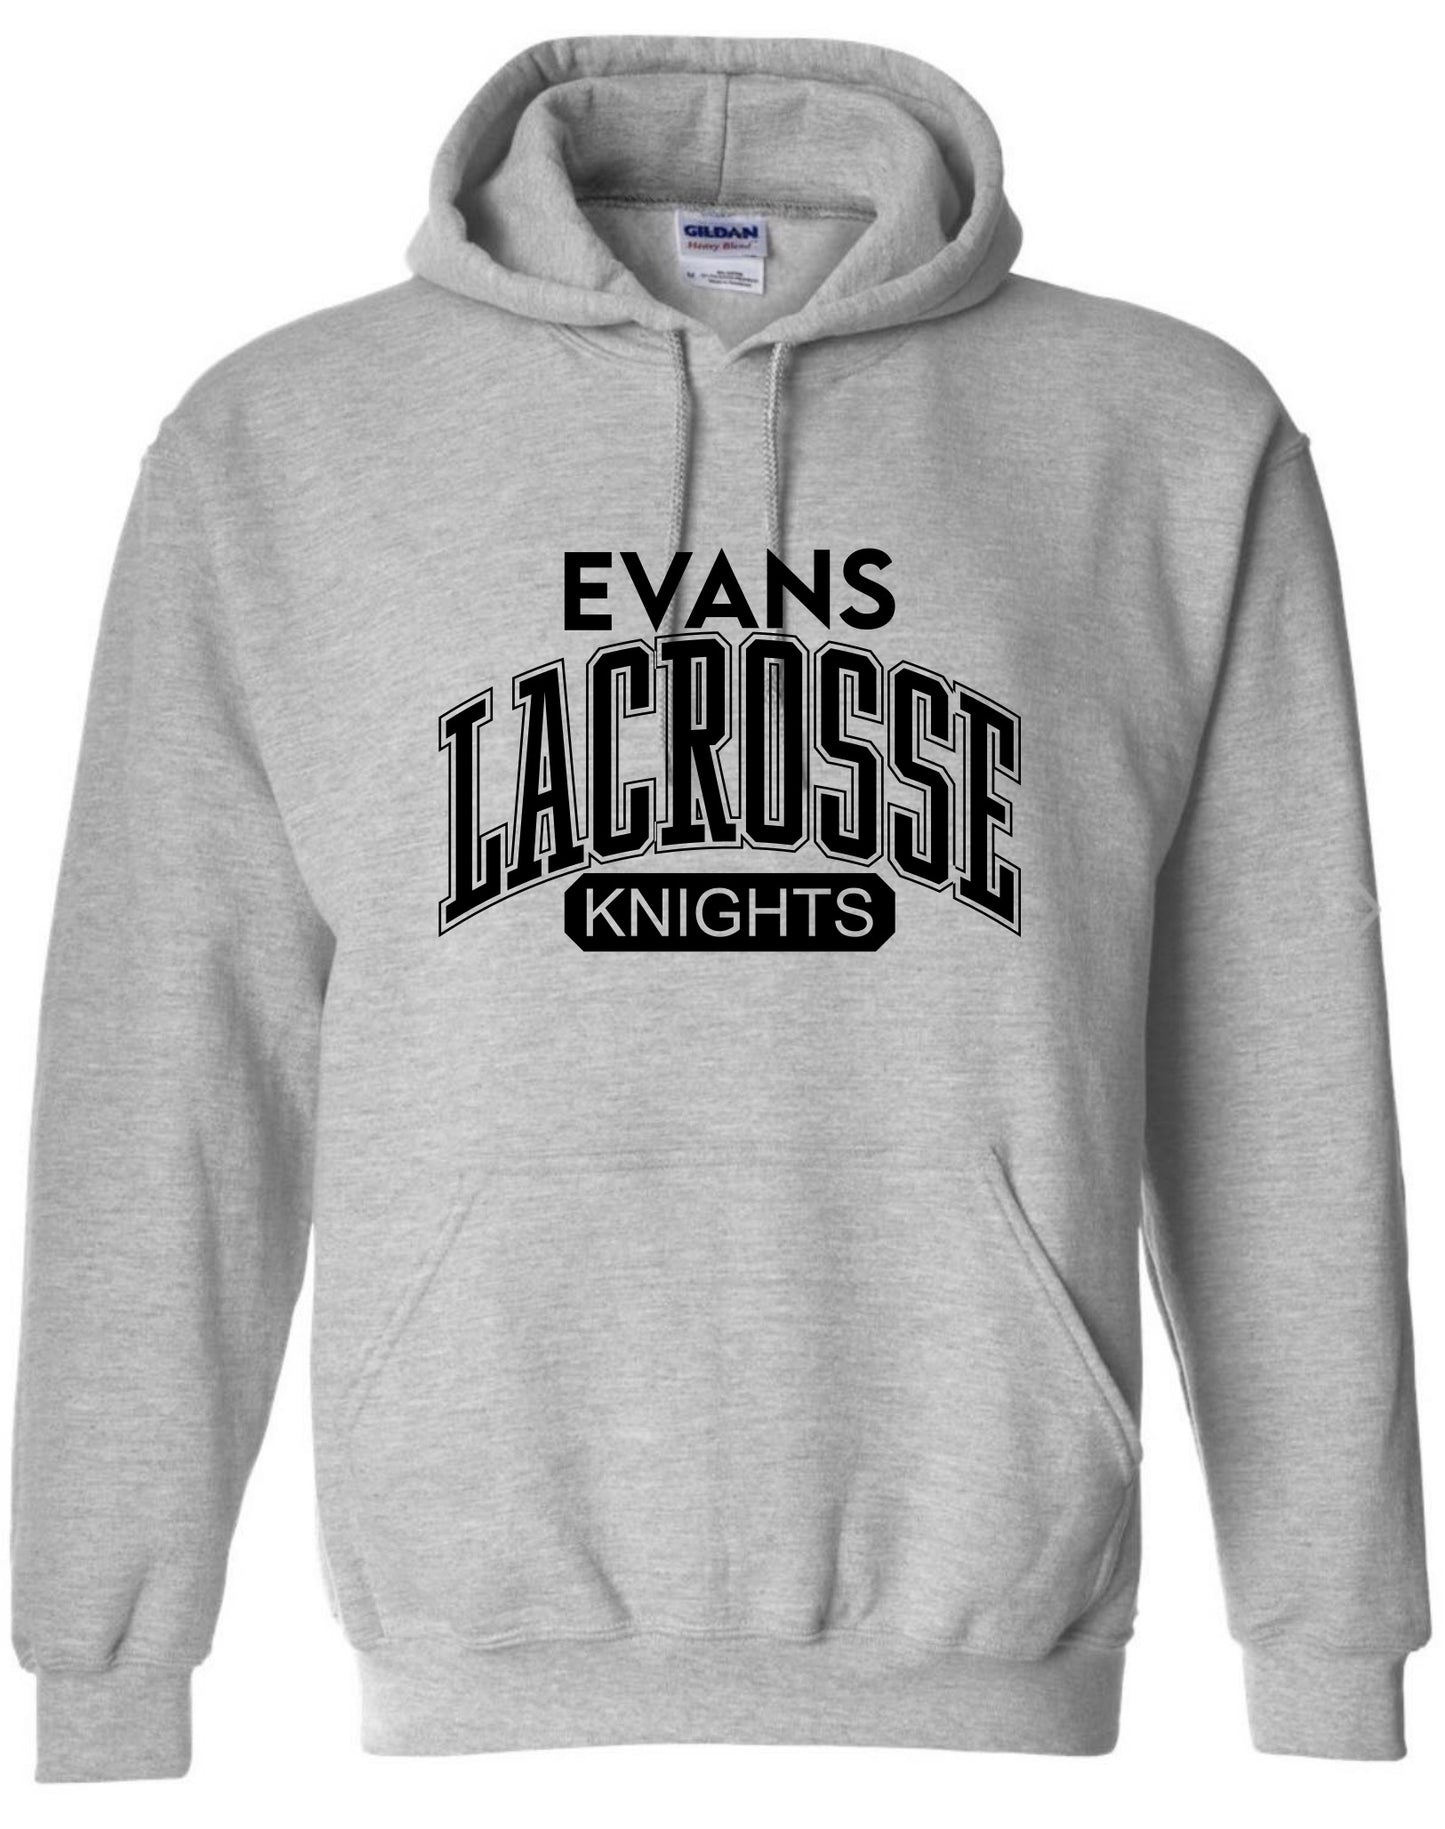 Evans Lacrosse Hoodie